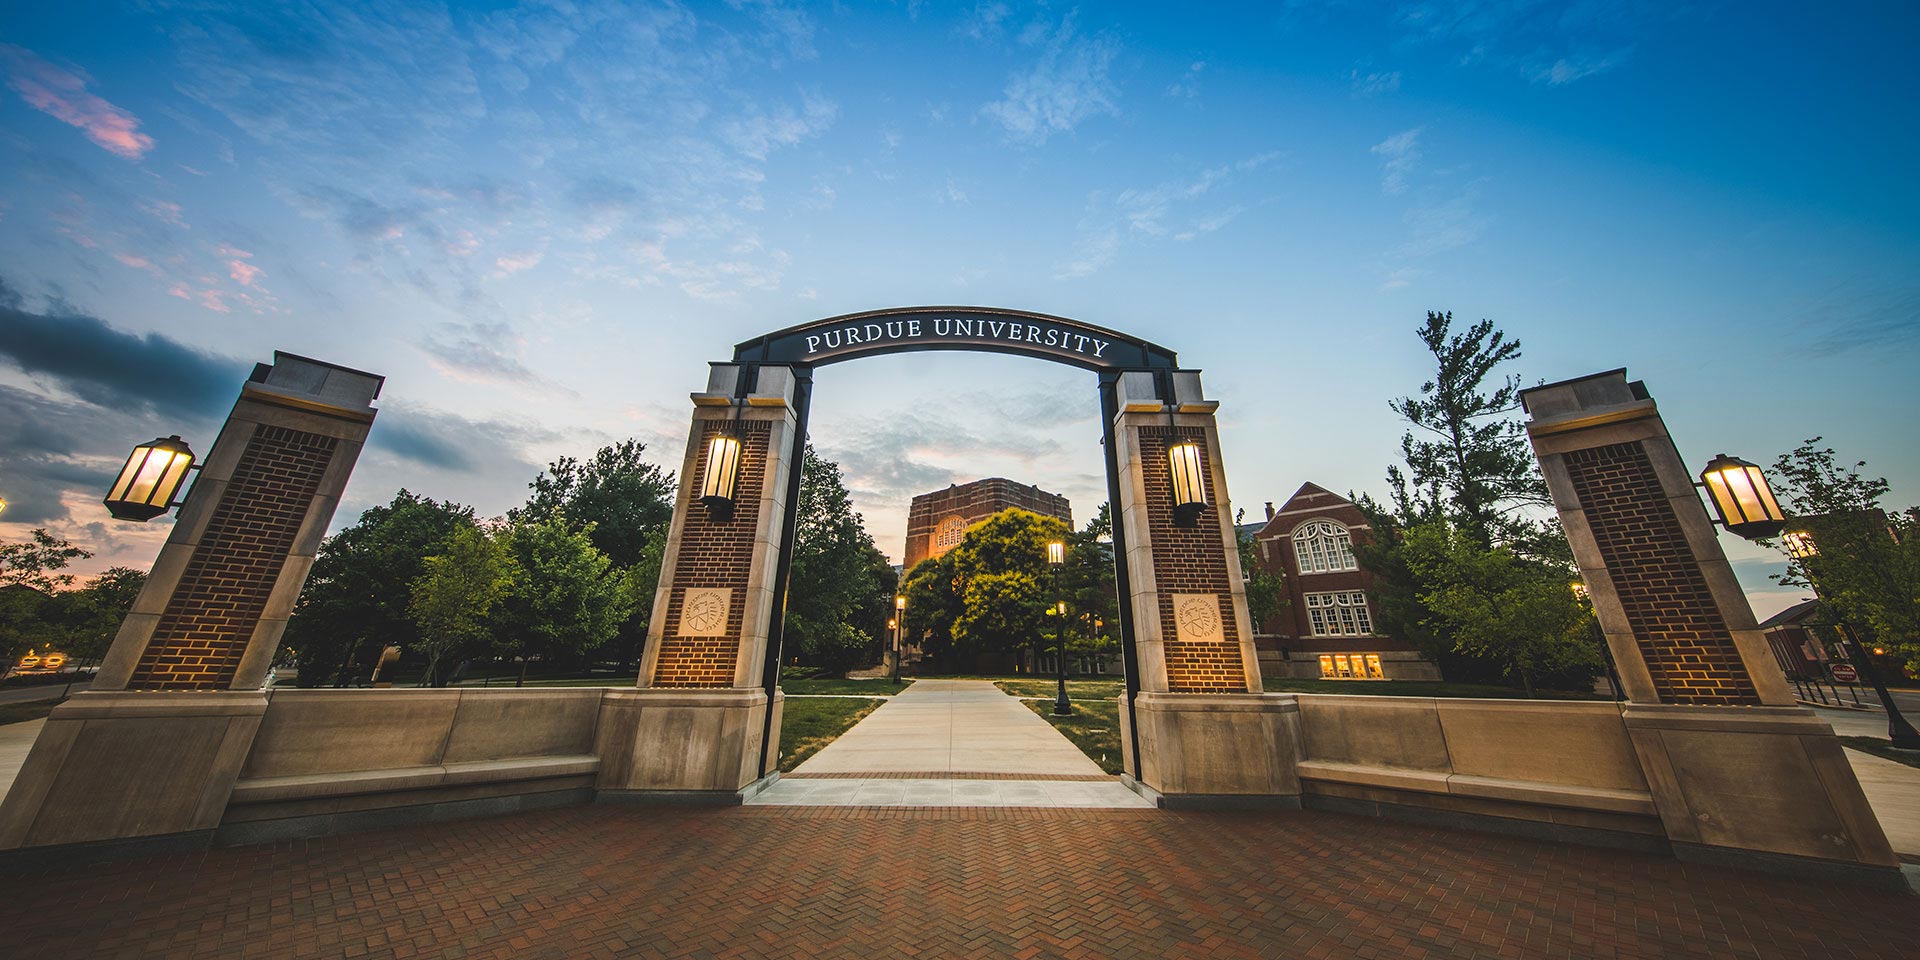 Purdue Memorial Union at Purdue University.